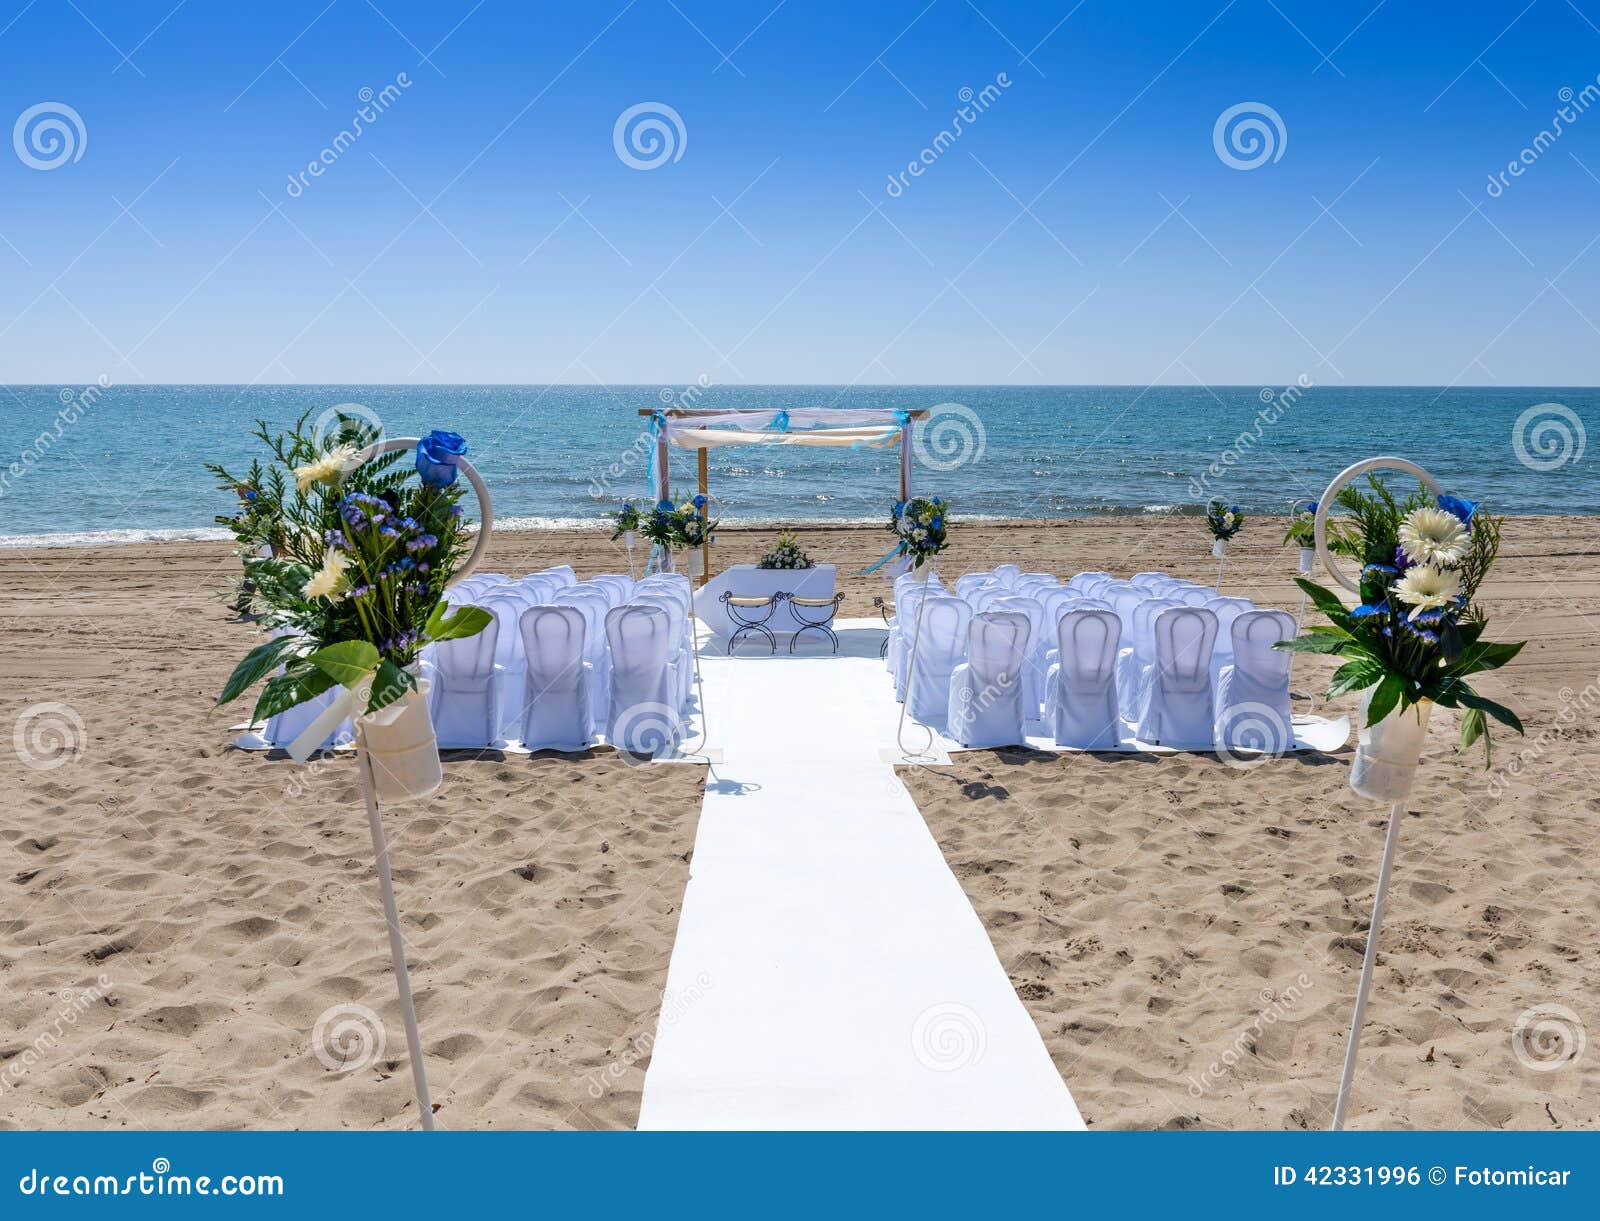 Wedding Ceremony On The Beach Stock Photo Image Of Ceremony